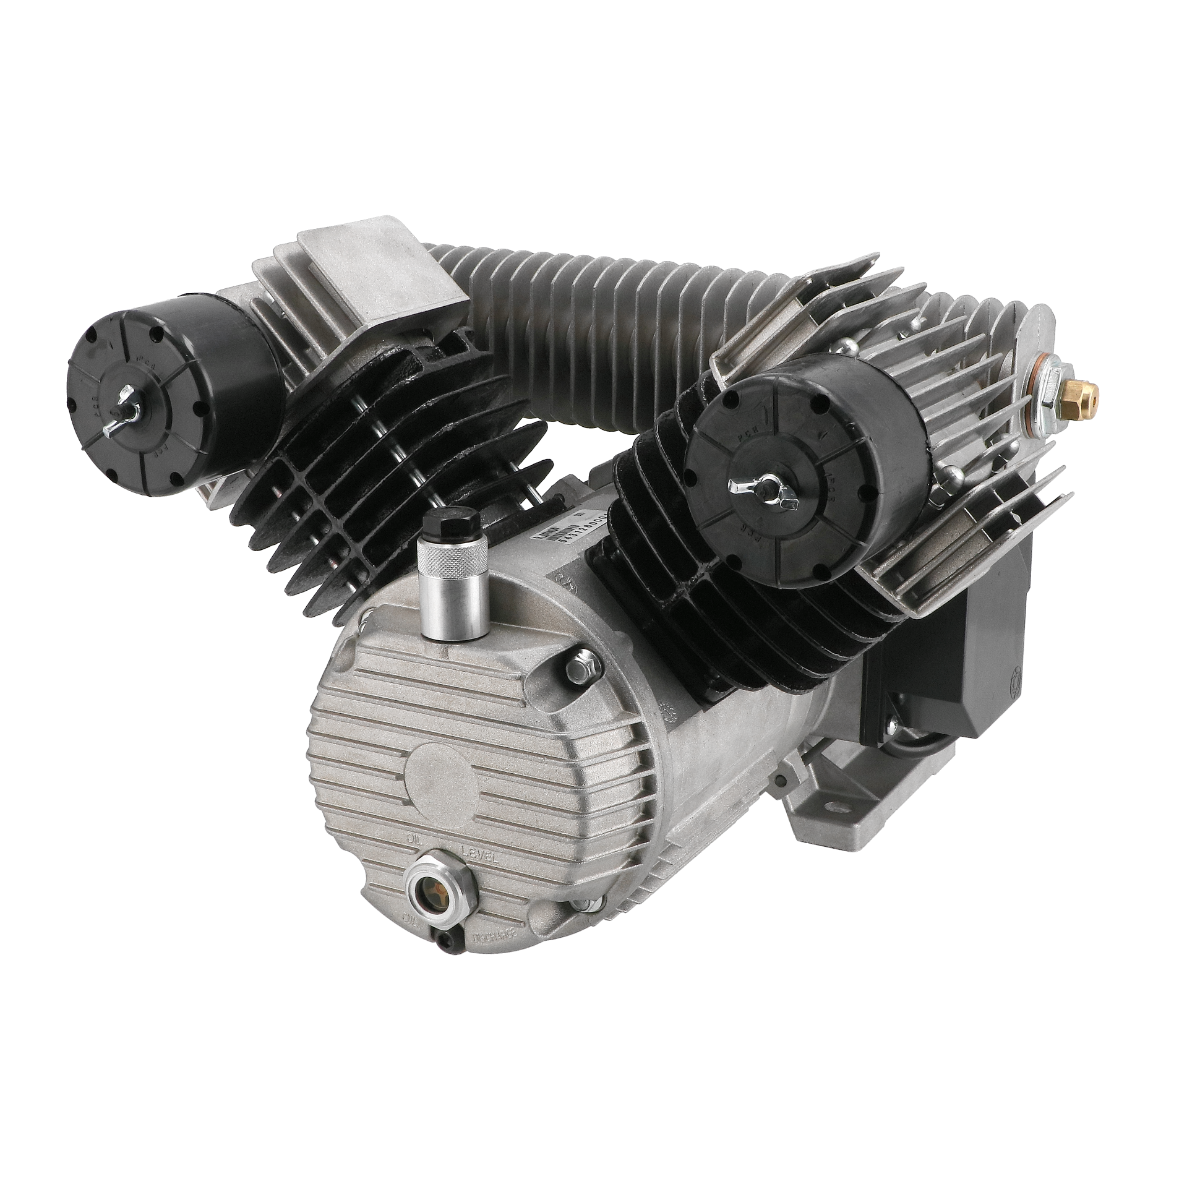 Autokompressor Aggregat Kompressor Luftdruck Luft 35l/min 6bar